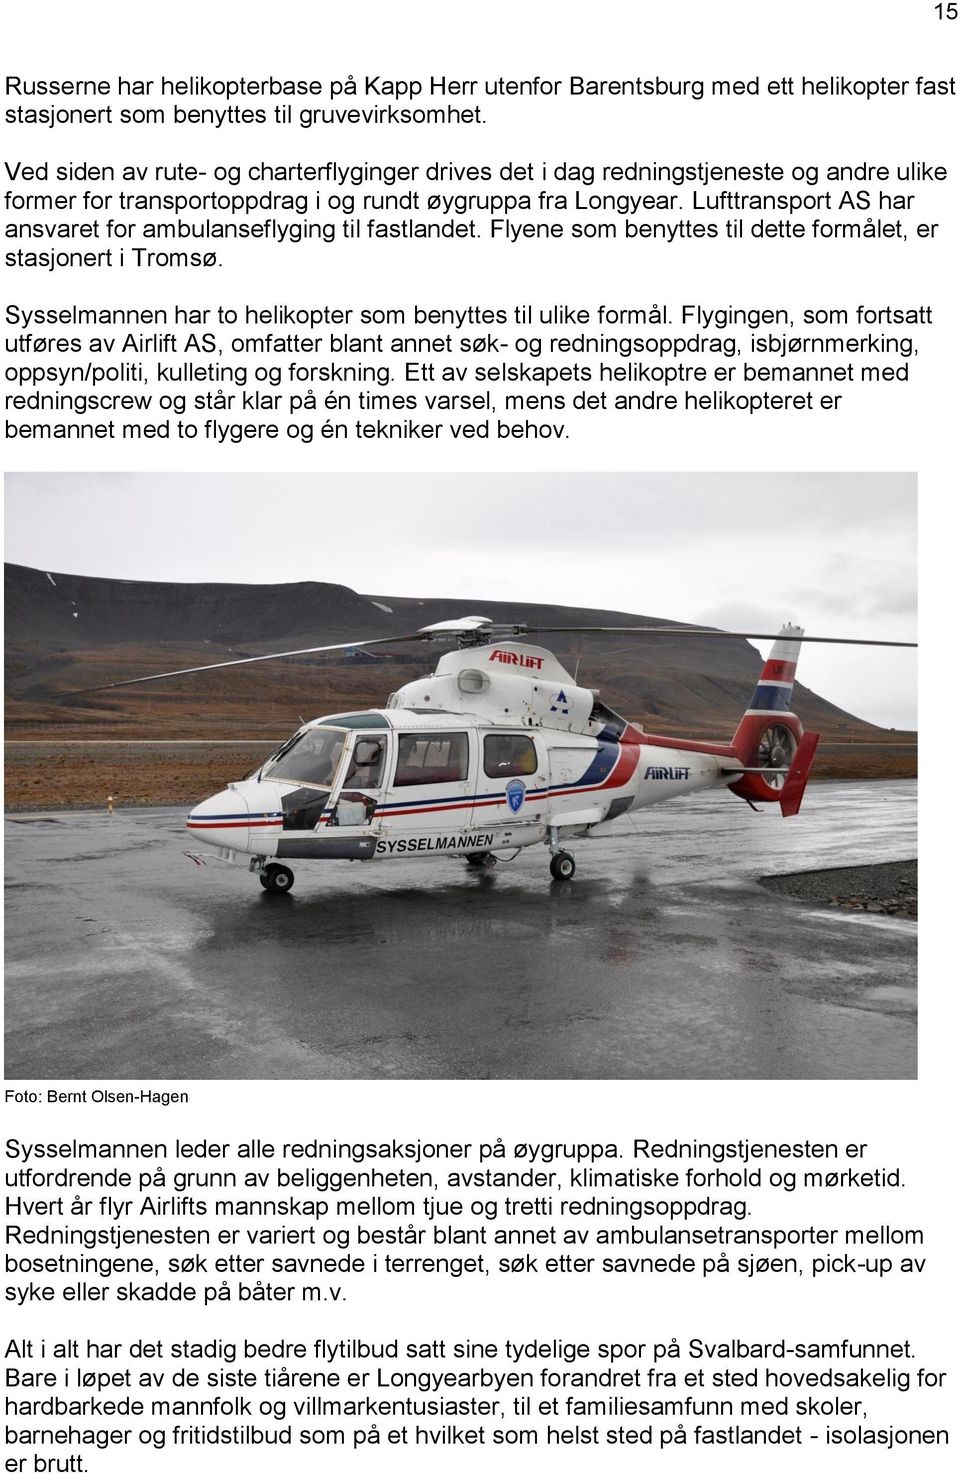 Lufttransport AS har ansvaret for ambulanseflyging til fastlandet. Flyene som benyttes til dette formålet, er stasjonert i Tromsø. Sysselmannen har to helikopter som benyttes til ulike formål.